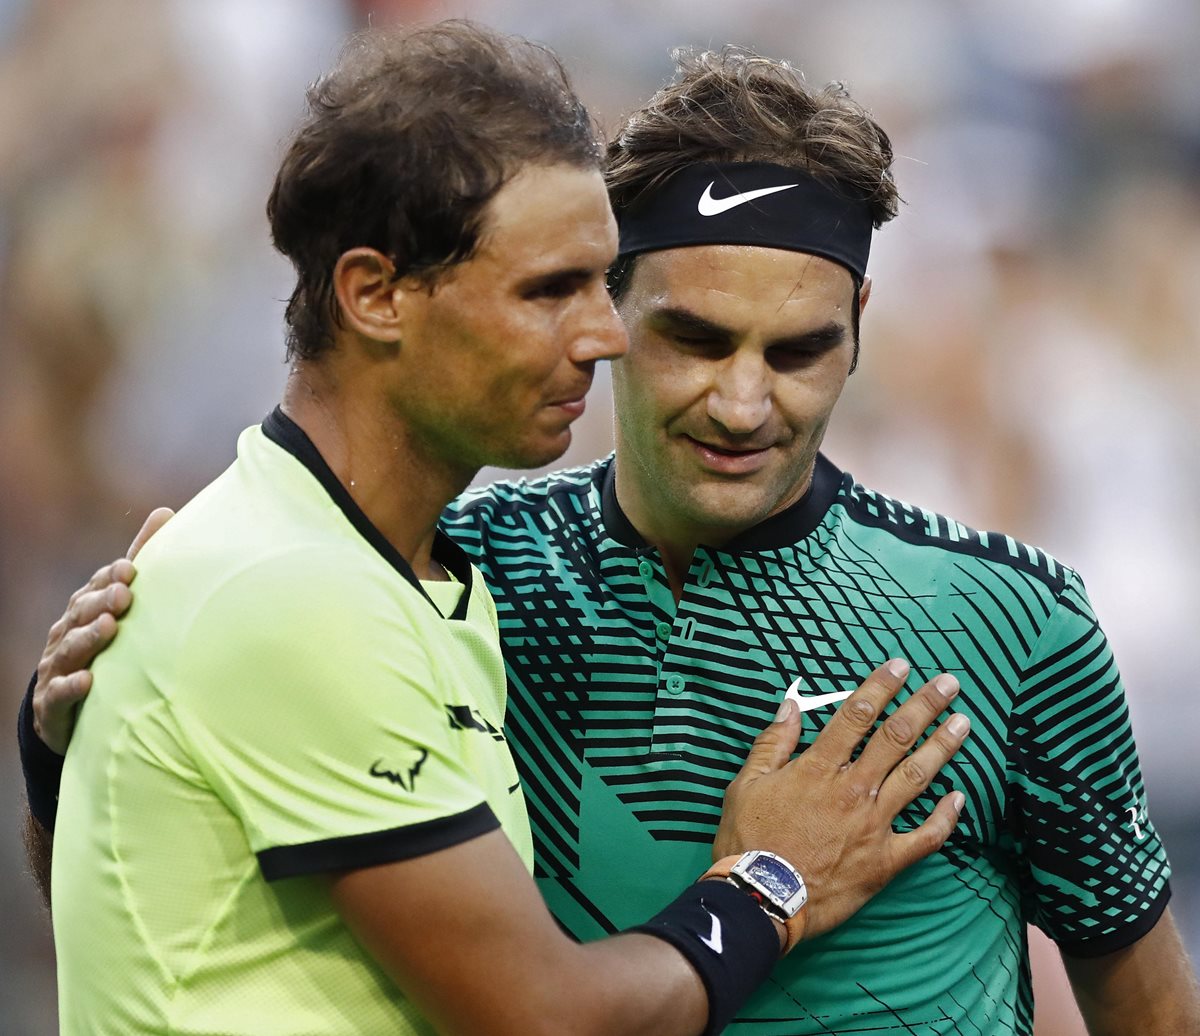 El posible duelo entre Nadal y Federer es el más esperado por los aficionados. (Foto Prensa Libre: EFE)